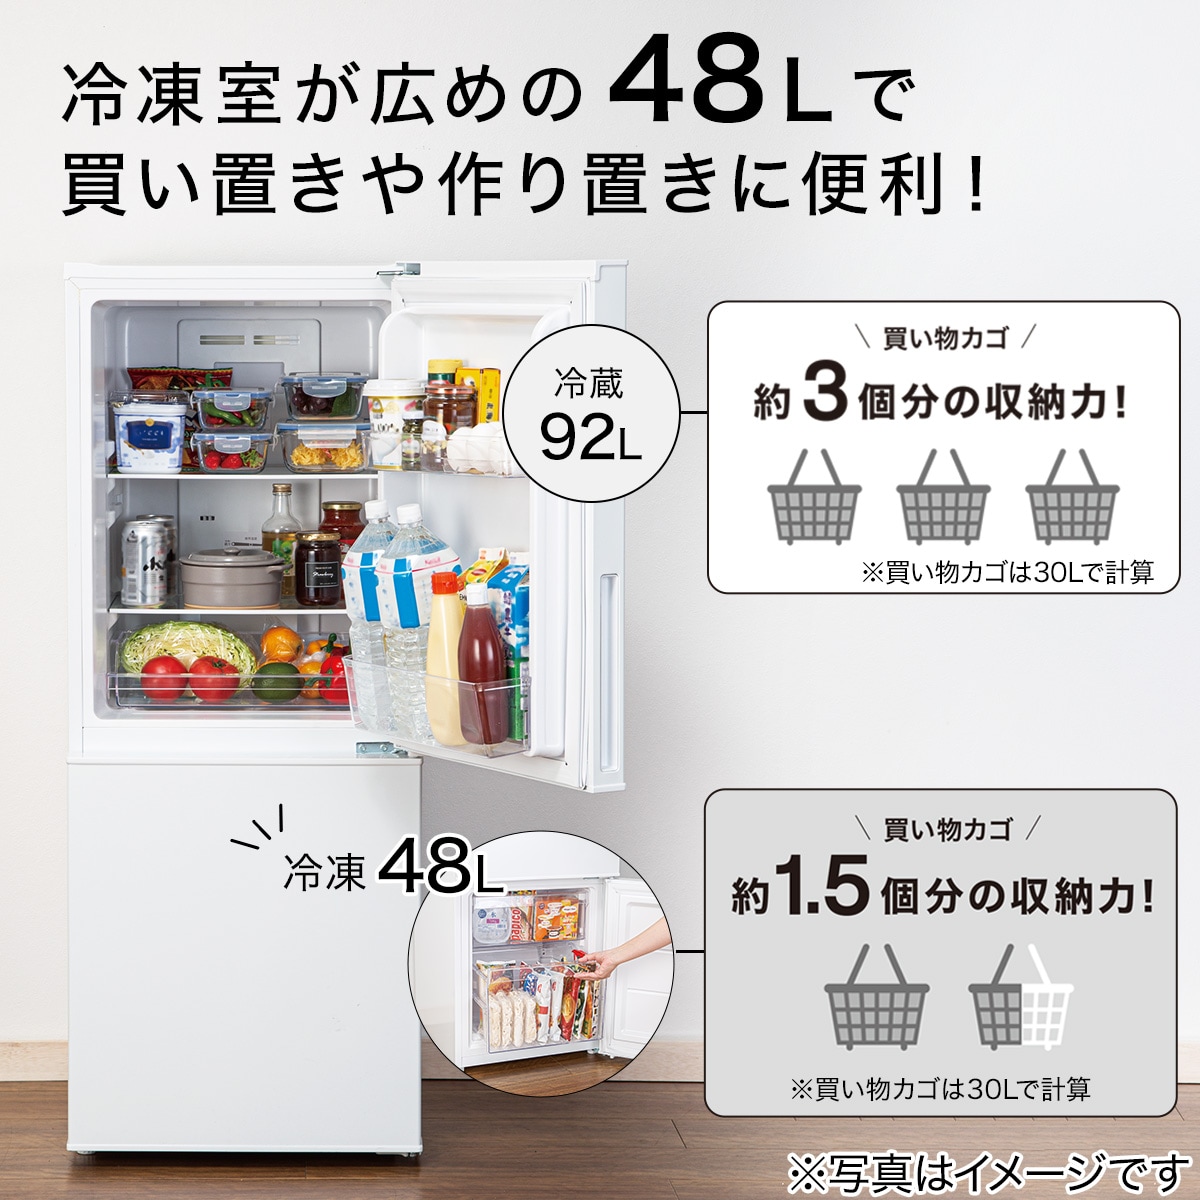 【家電批評ベストバイ受賞】140L 霜取り不要 2ドア冷蔵庫 WH(NTR-140)